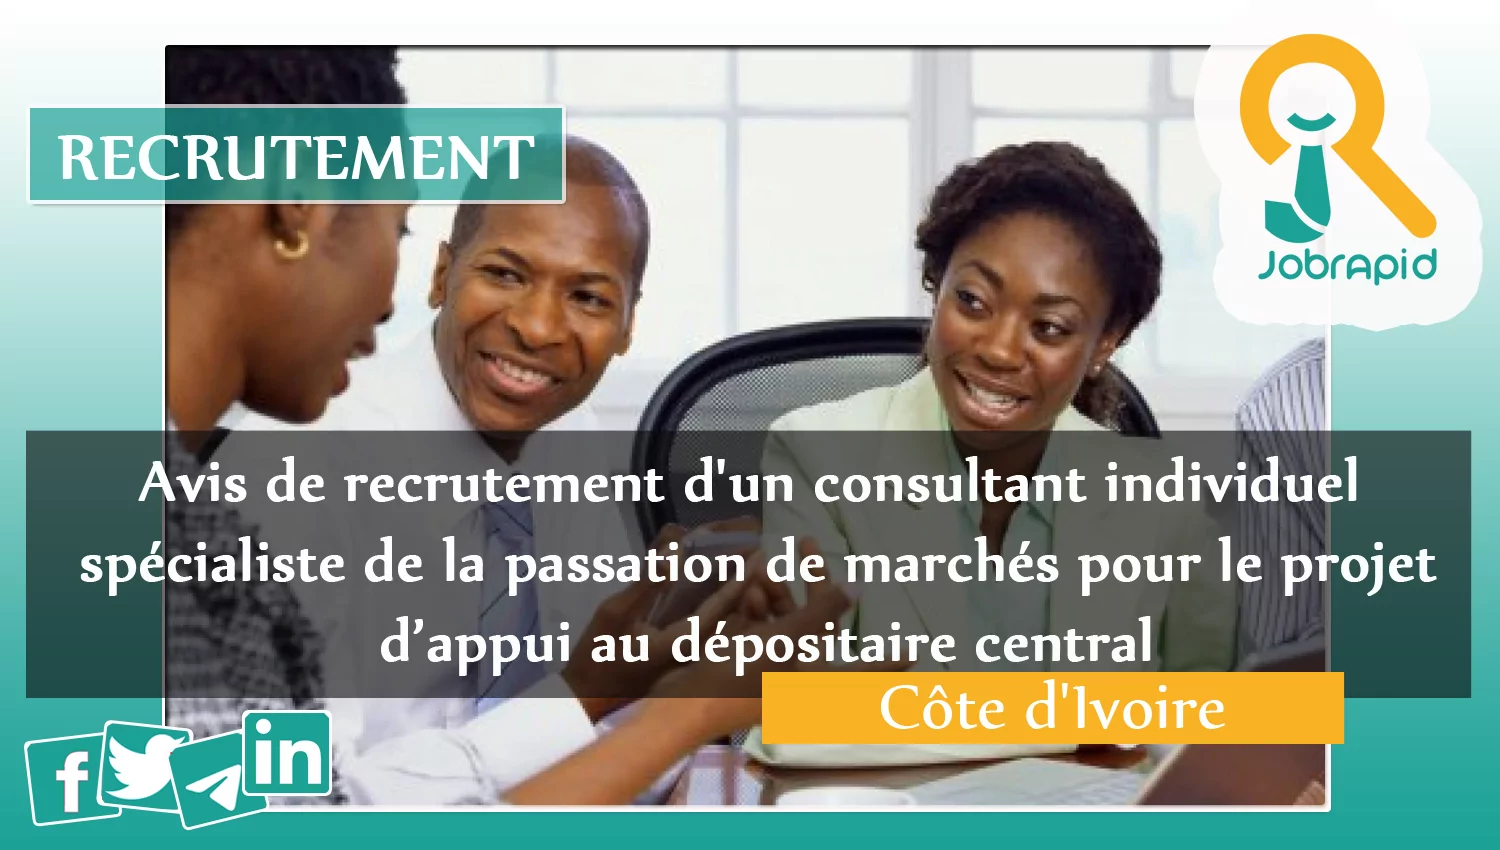 Avis de recrutement d’un consultant individuel spécialiste de la passation de marchés pour le projet d’appui au dépositaire central, Côte d’Ivoire